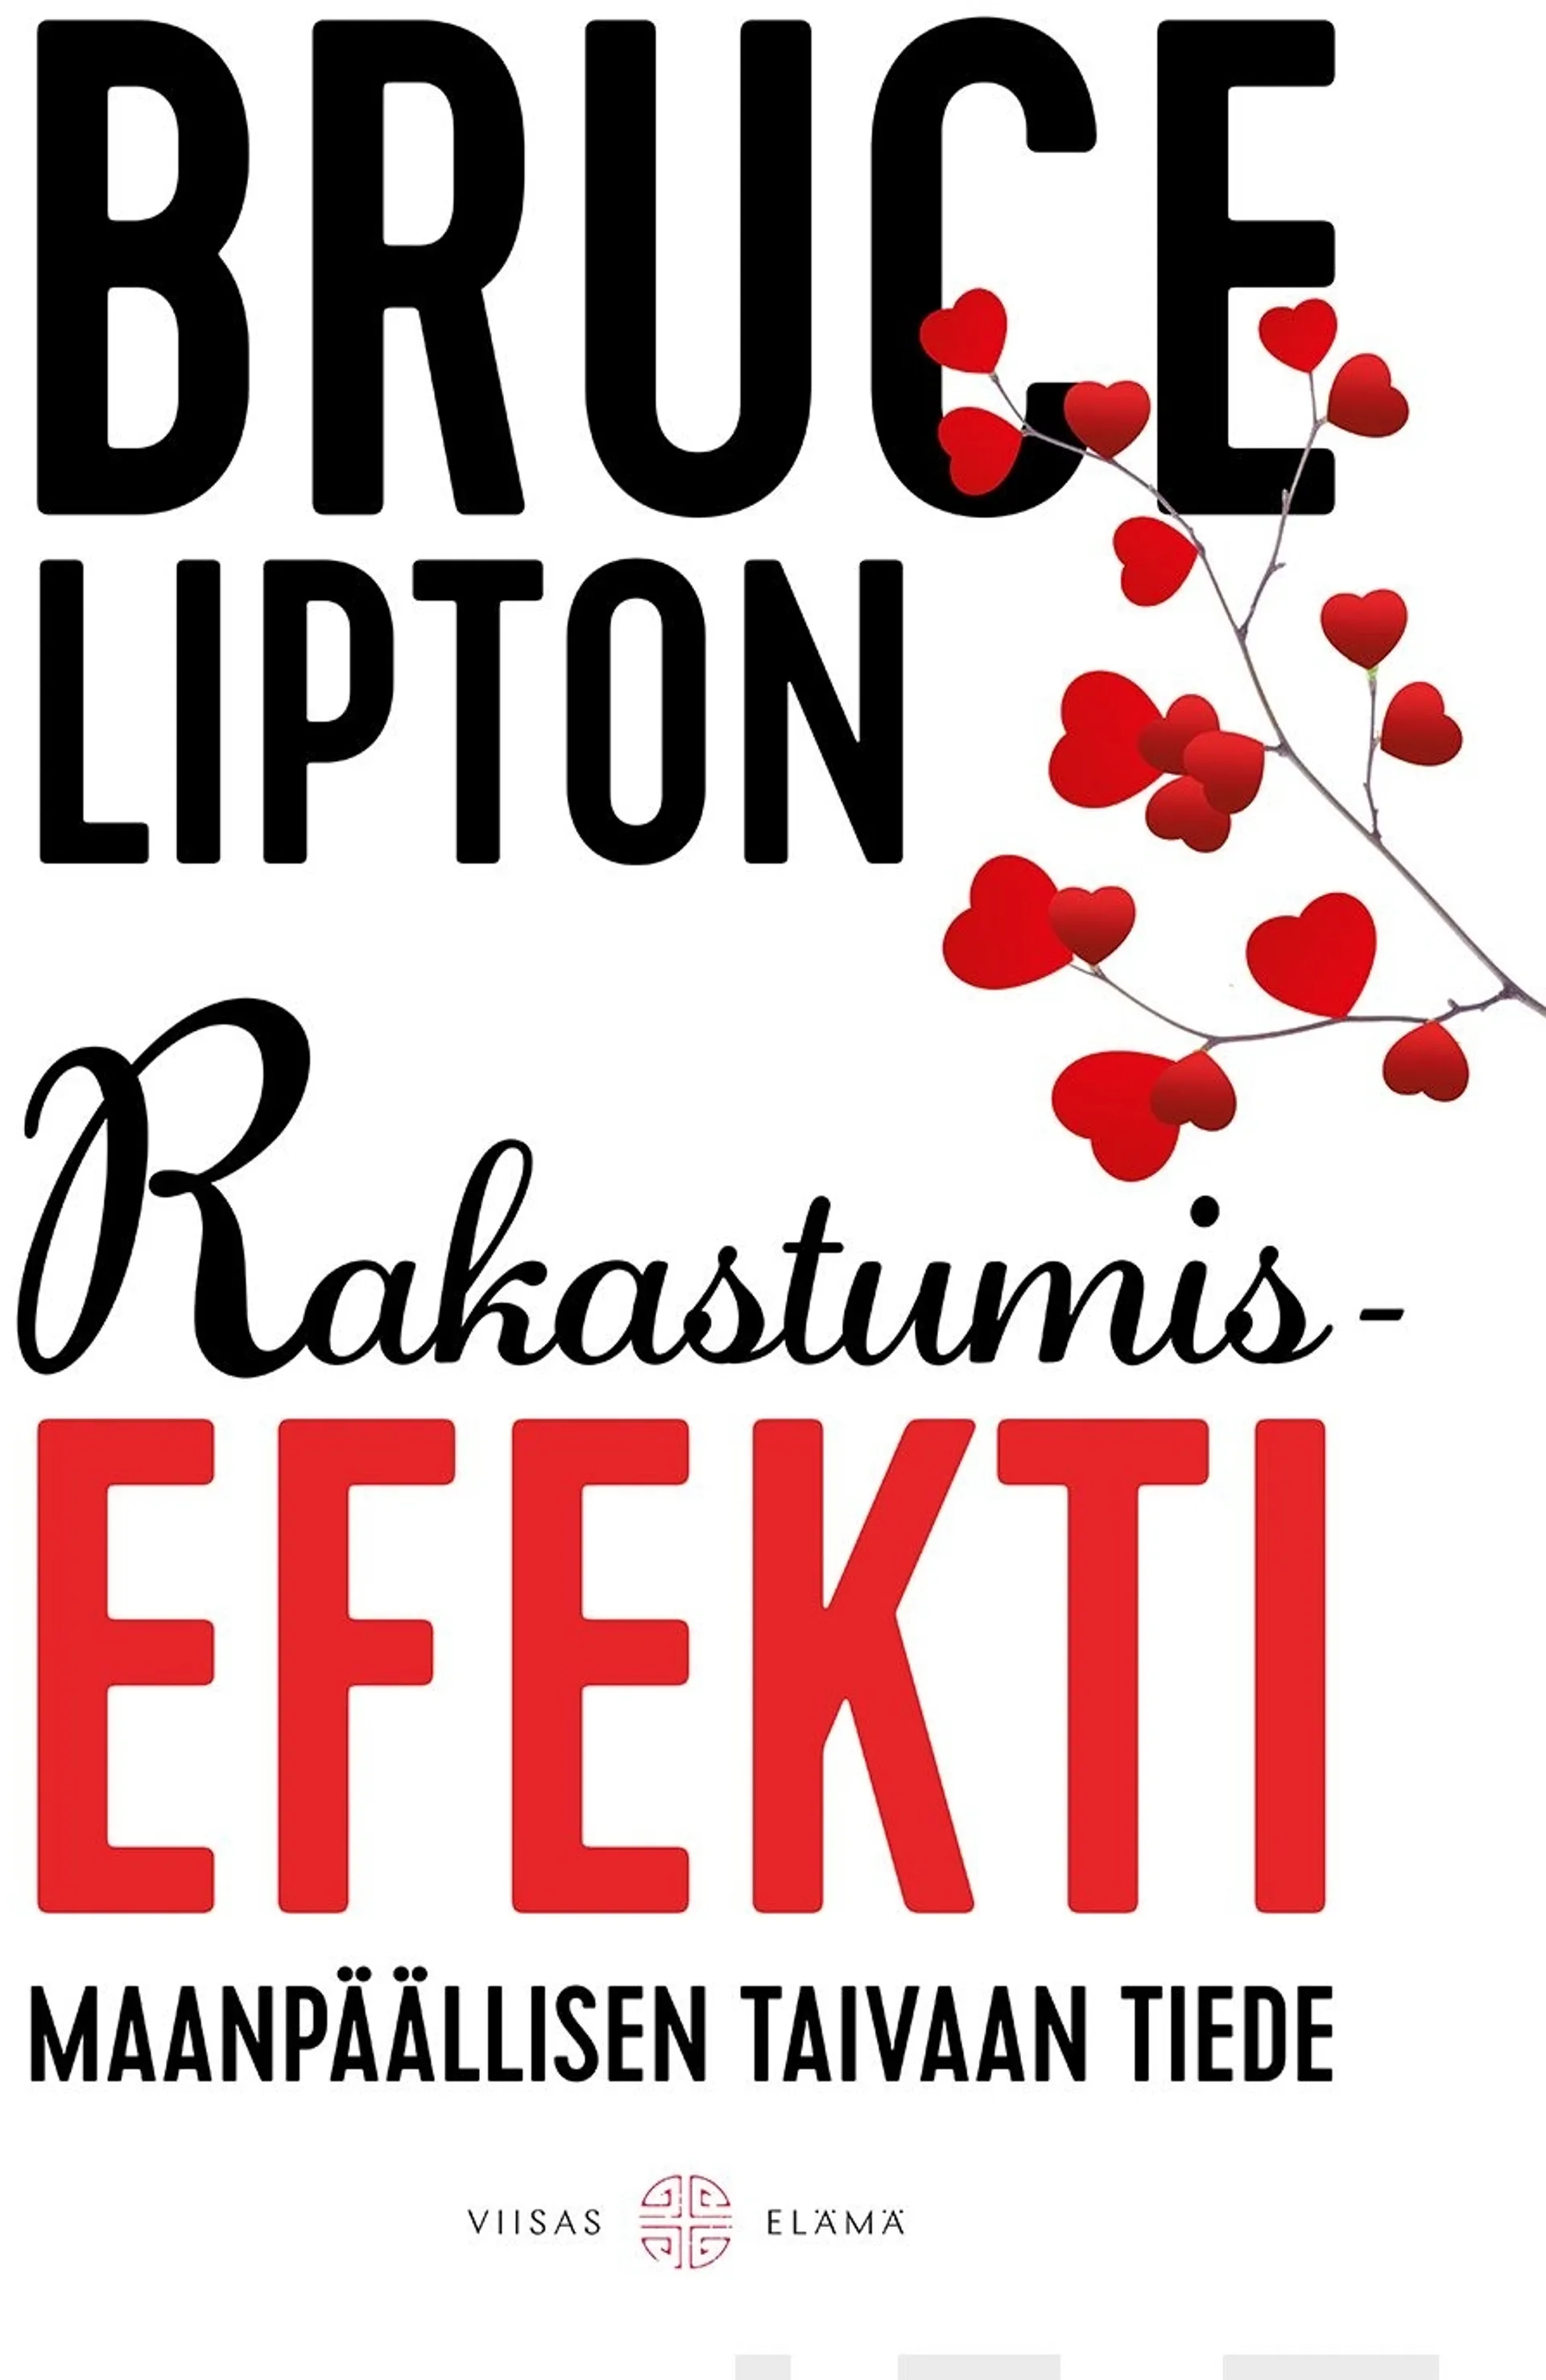 Lipton, Rakastumisefekti